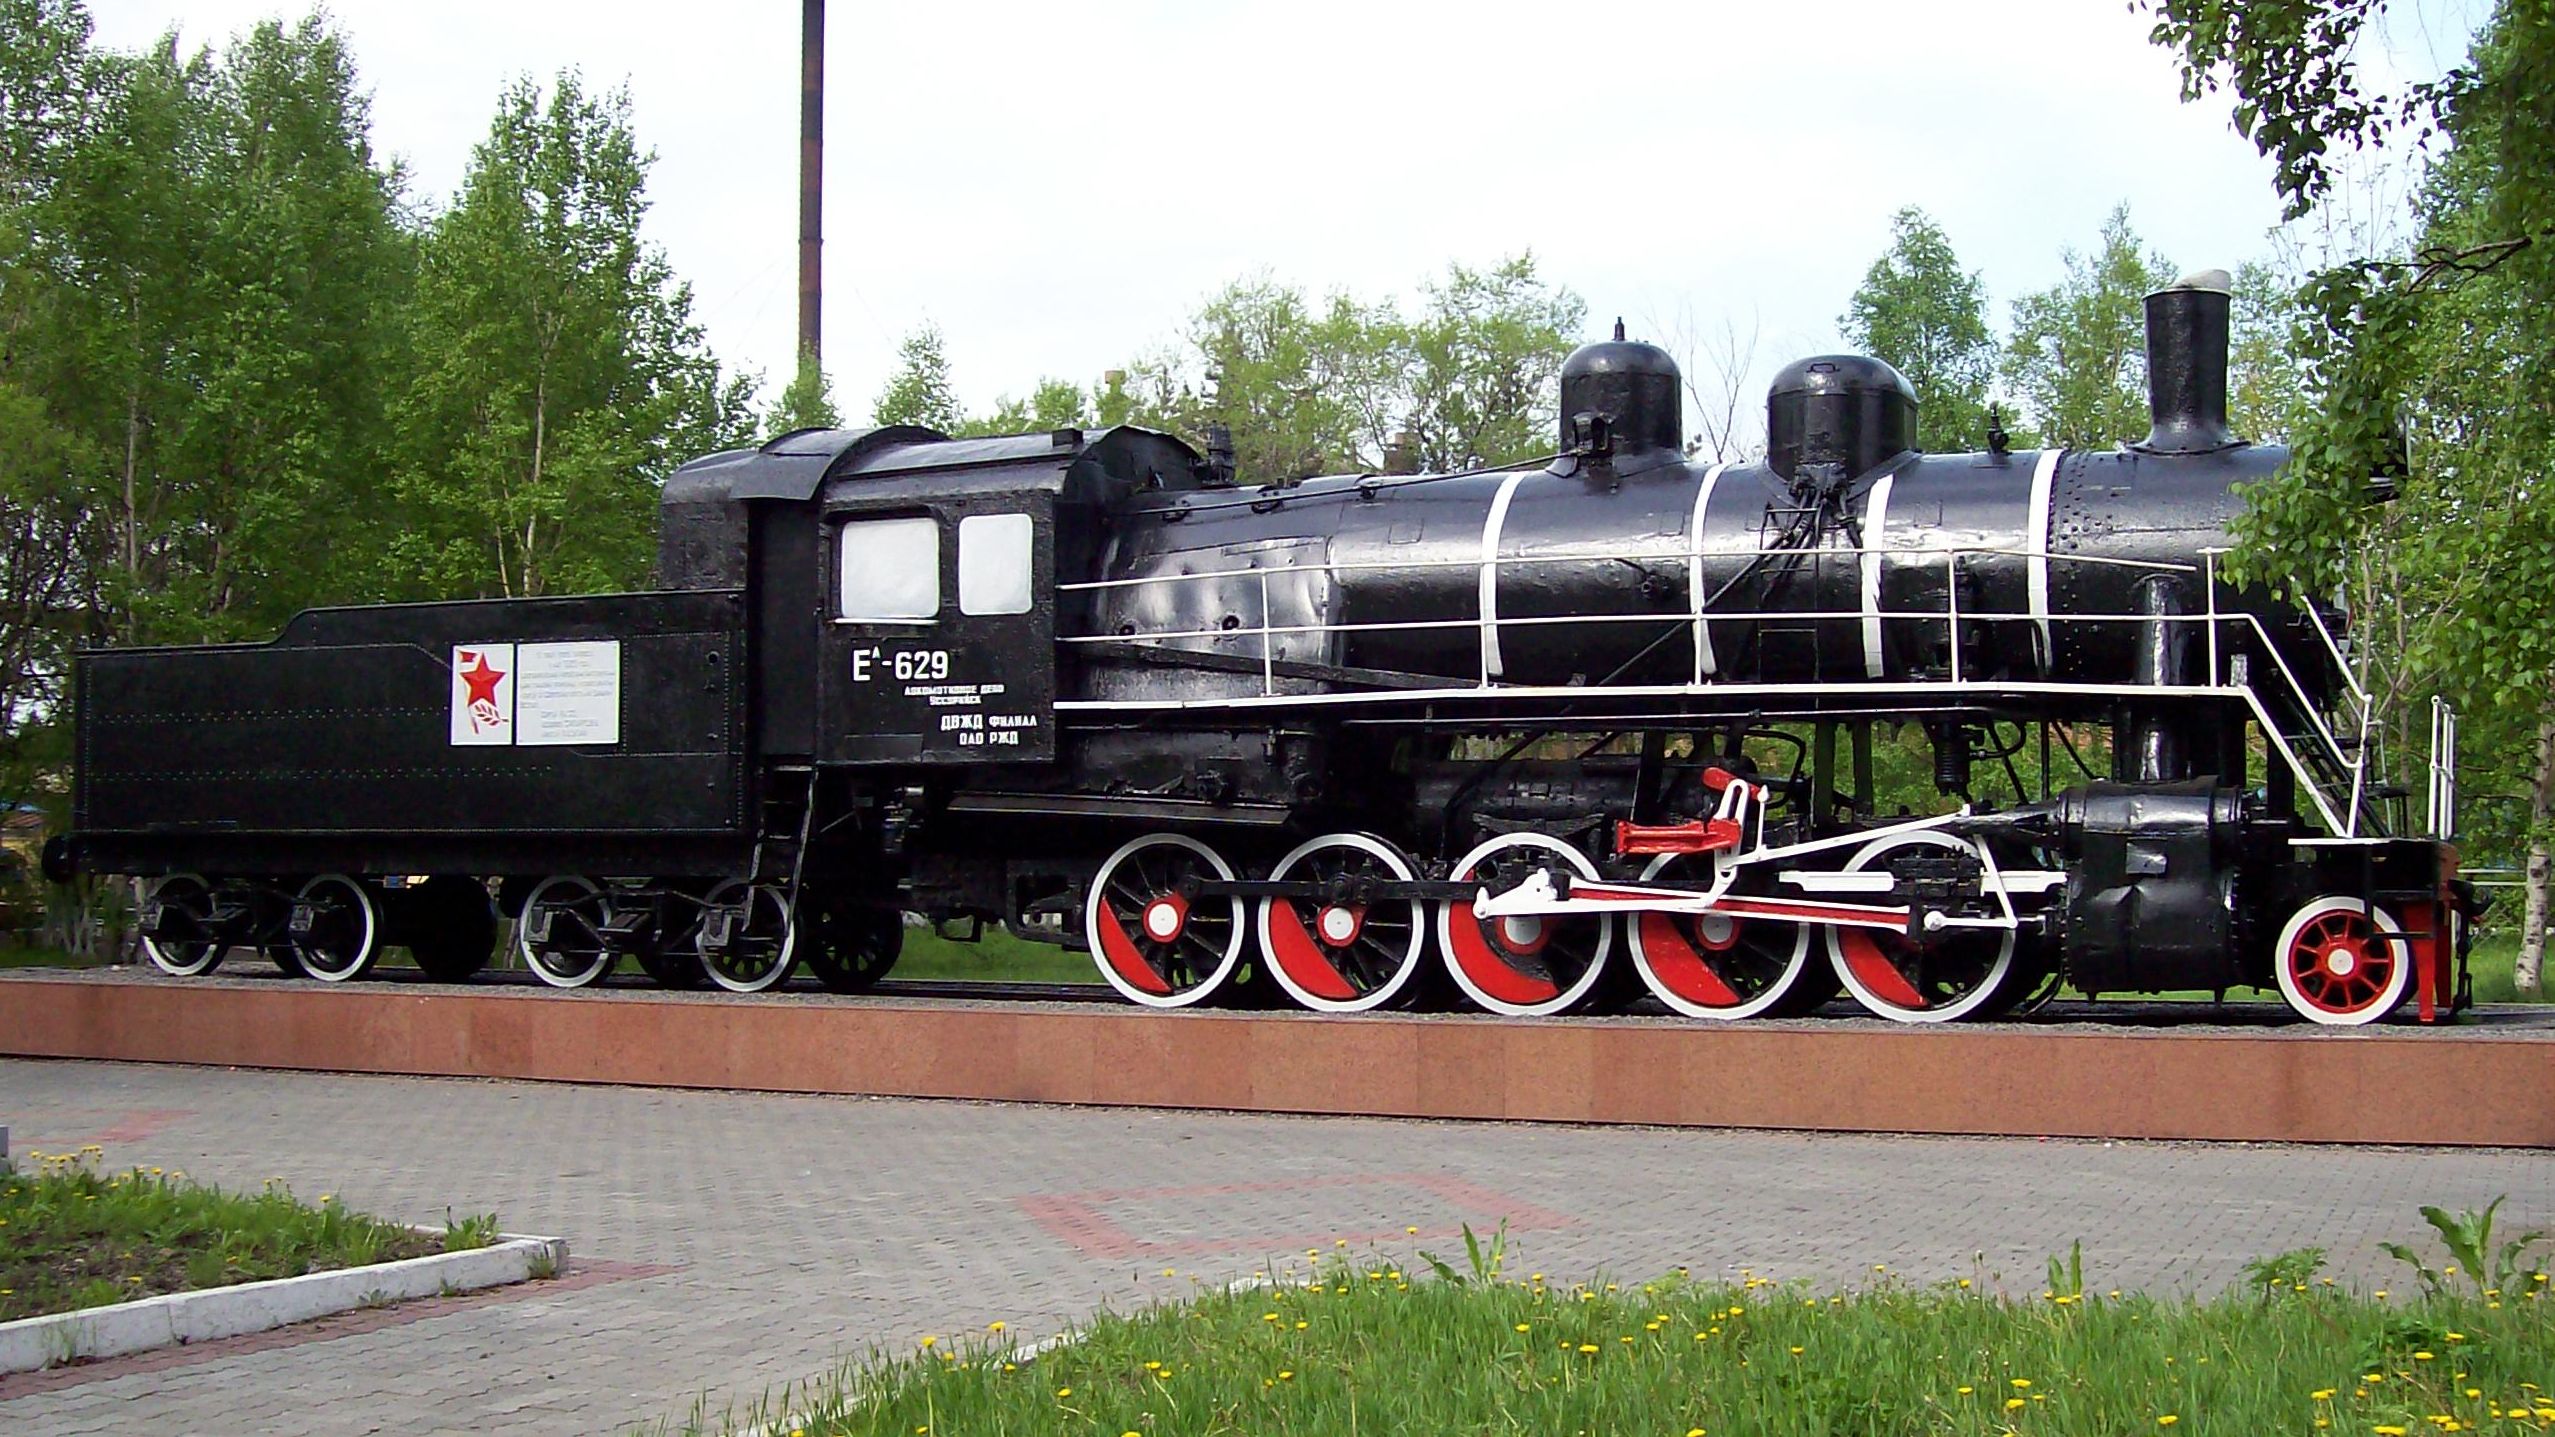 在质疑声中坚挺至今的双城子蒸汽机车纪念碑——yel-629号蒸汽机车